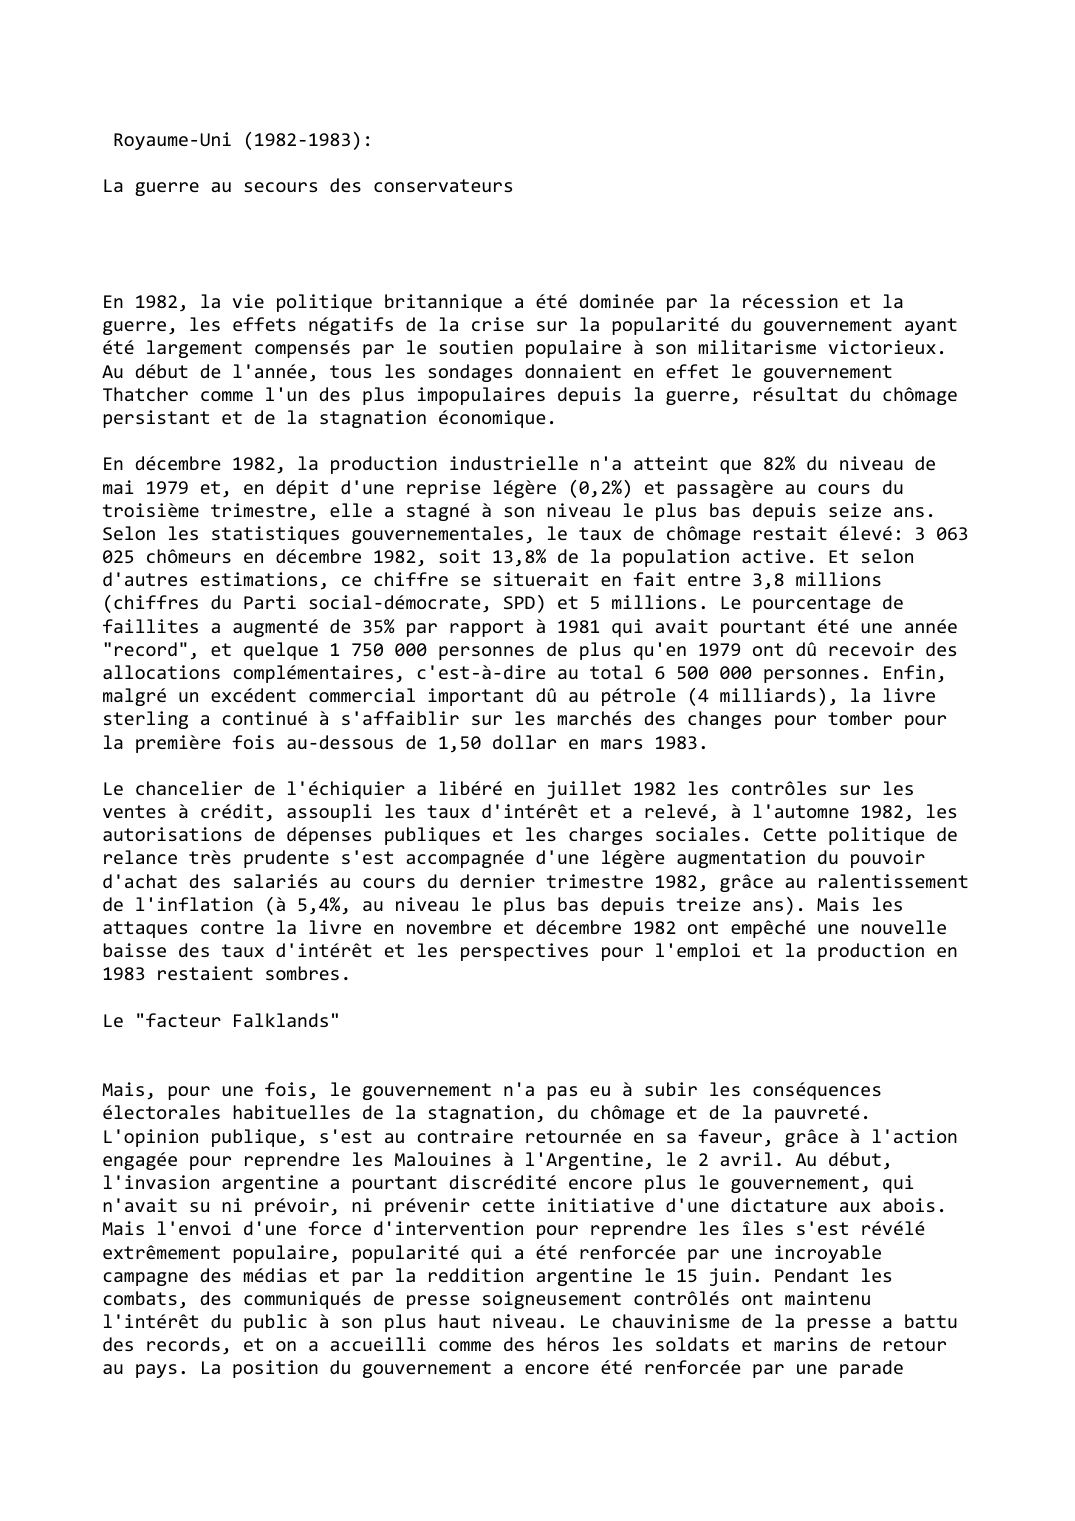 Prévisualisation du document Royaume-Uni (1982-1983):

La guerre au secours des conservateurs